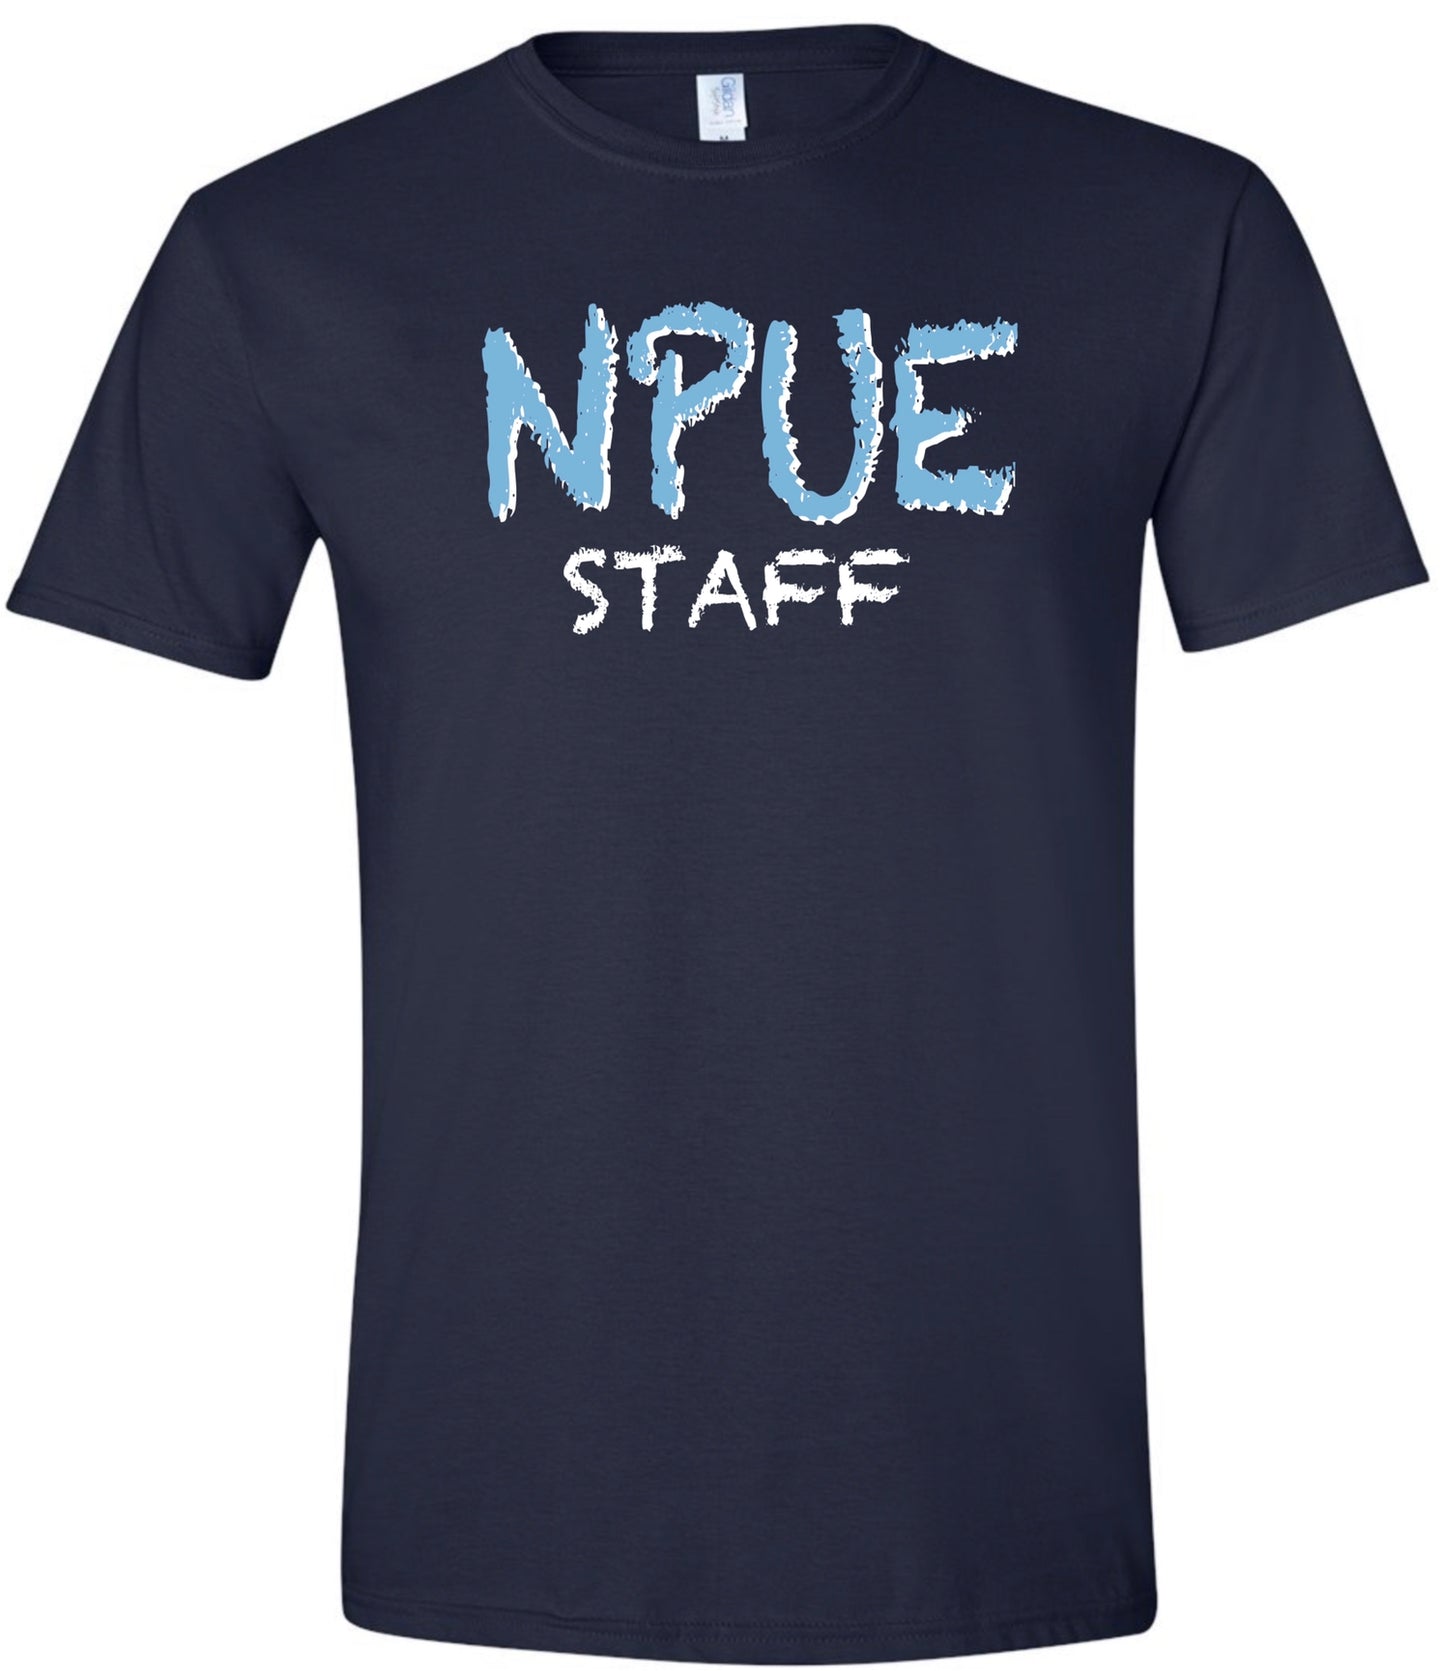 NPUE Staff Tee